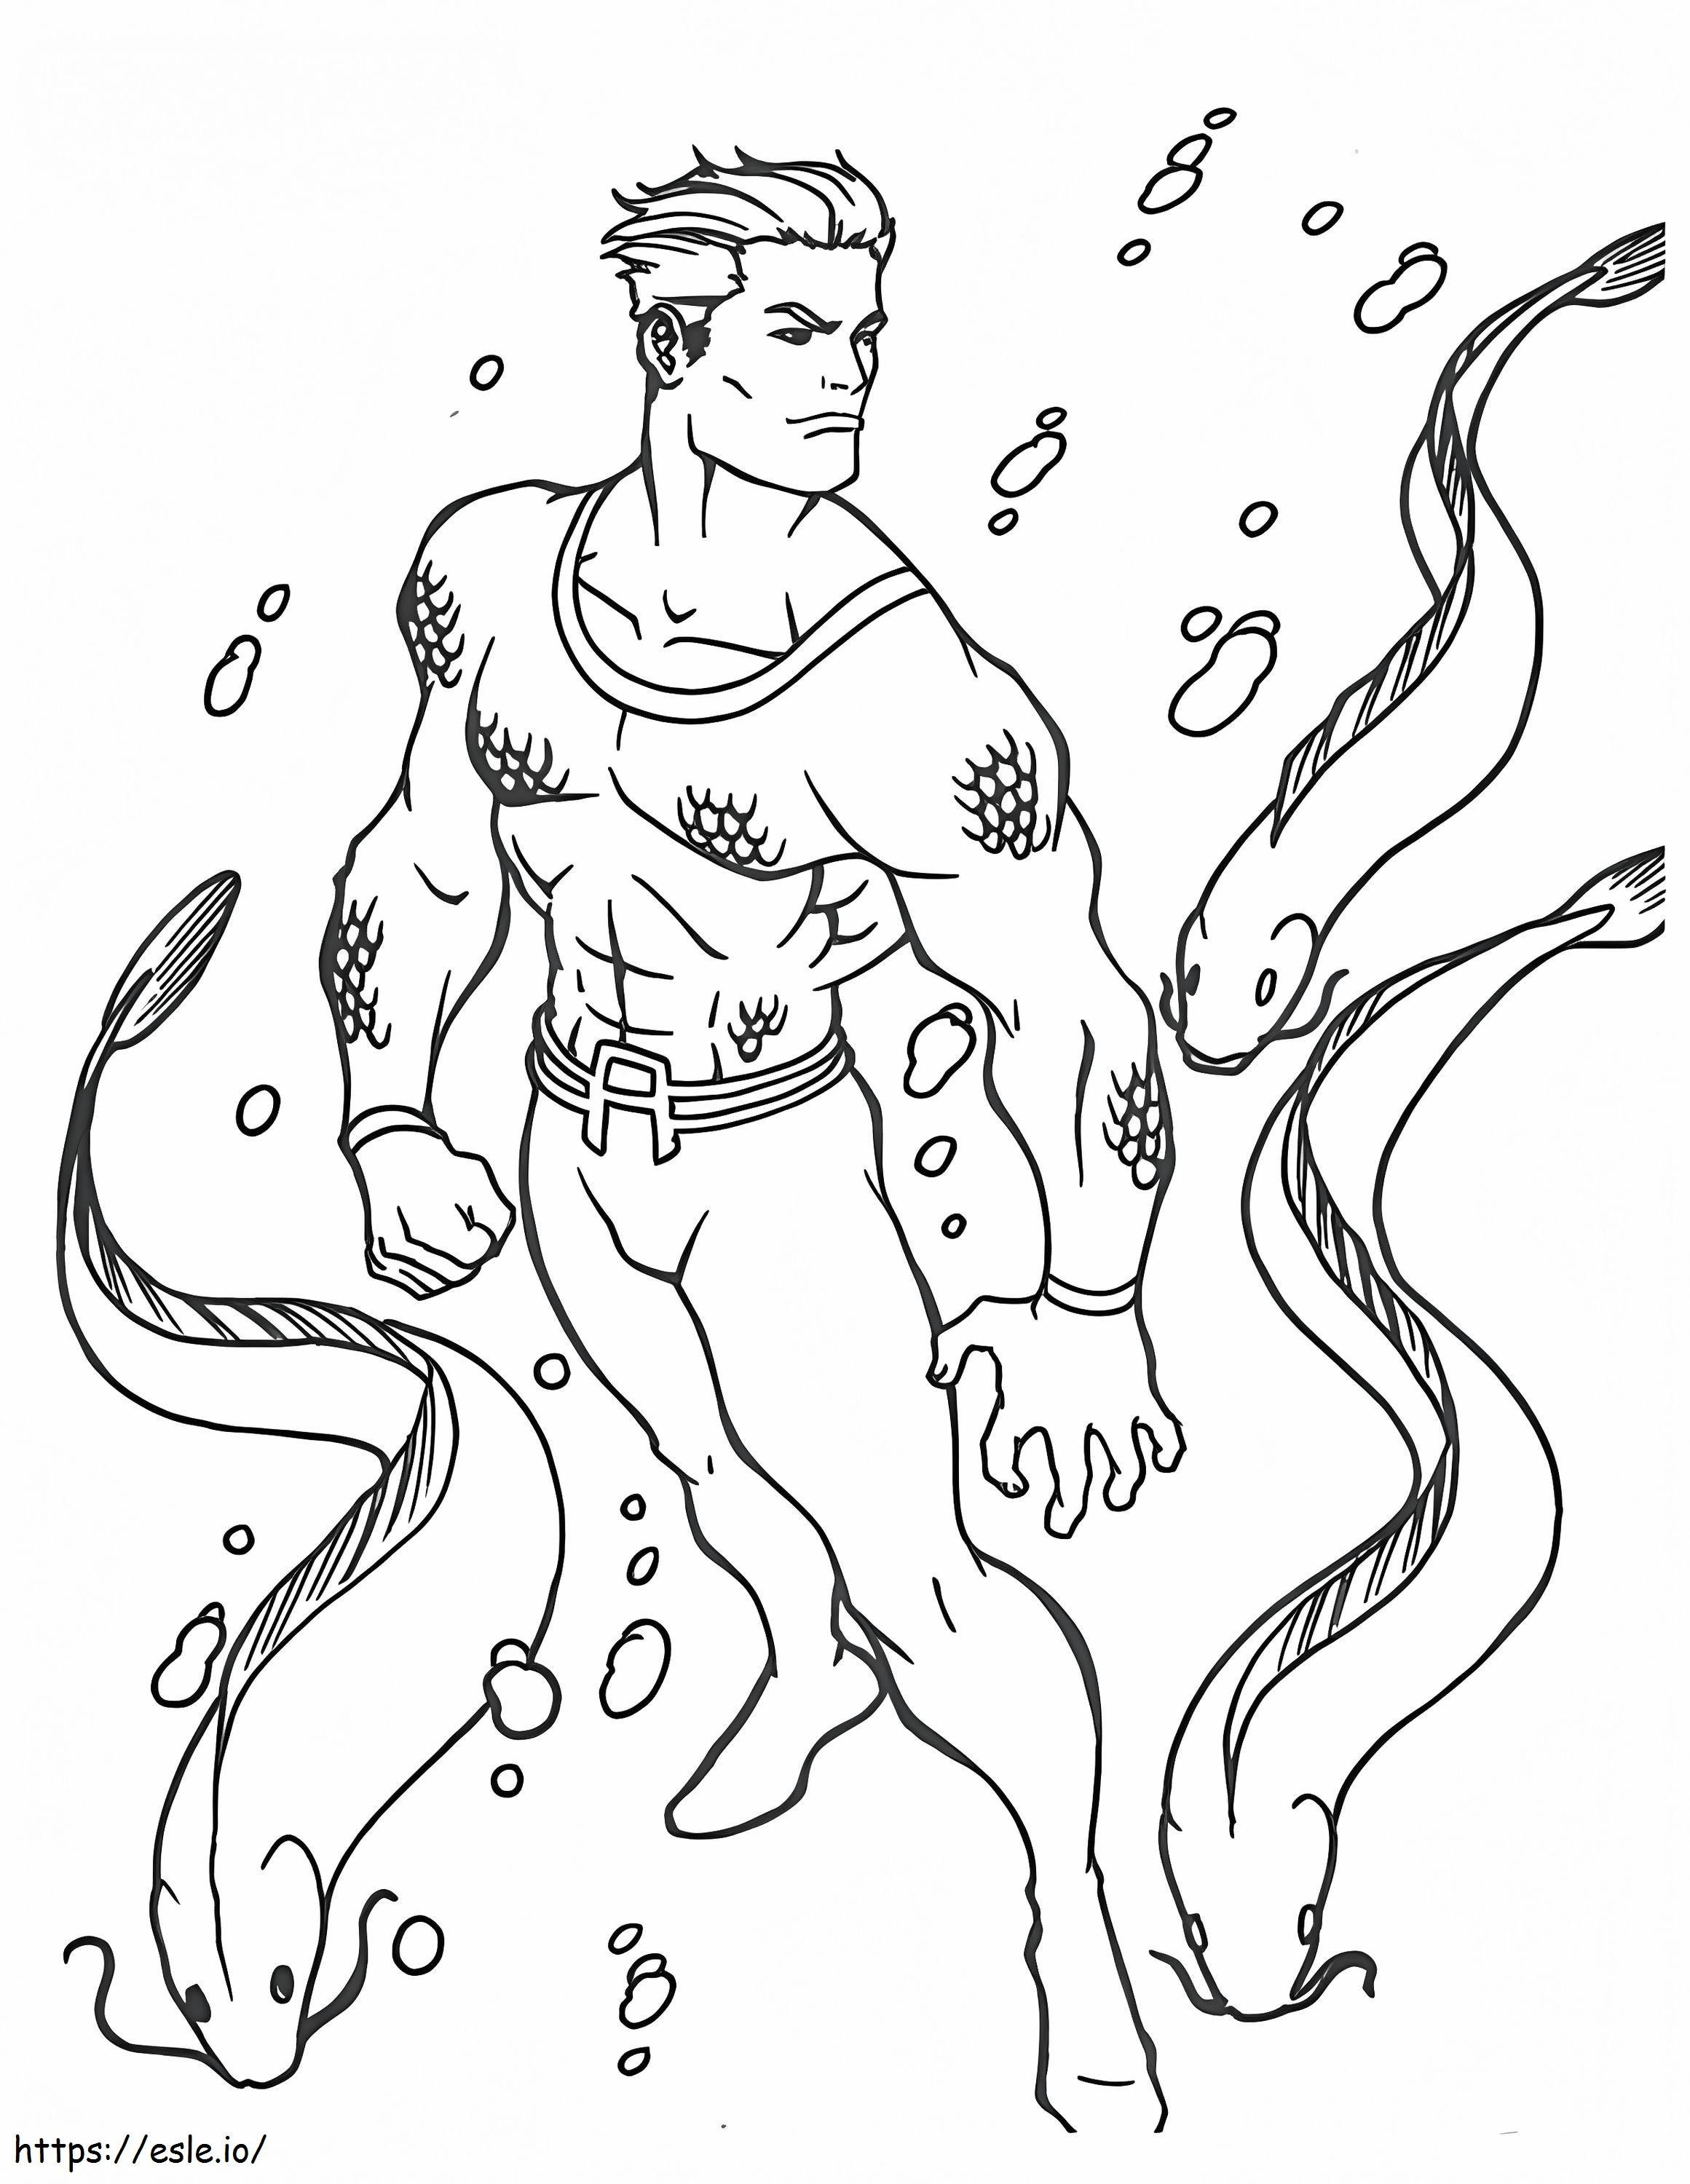 Aquaman 6 coloring page